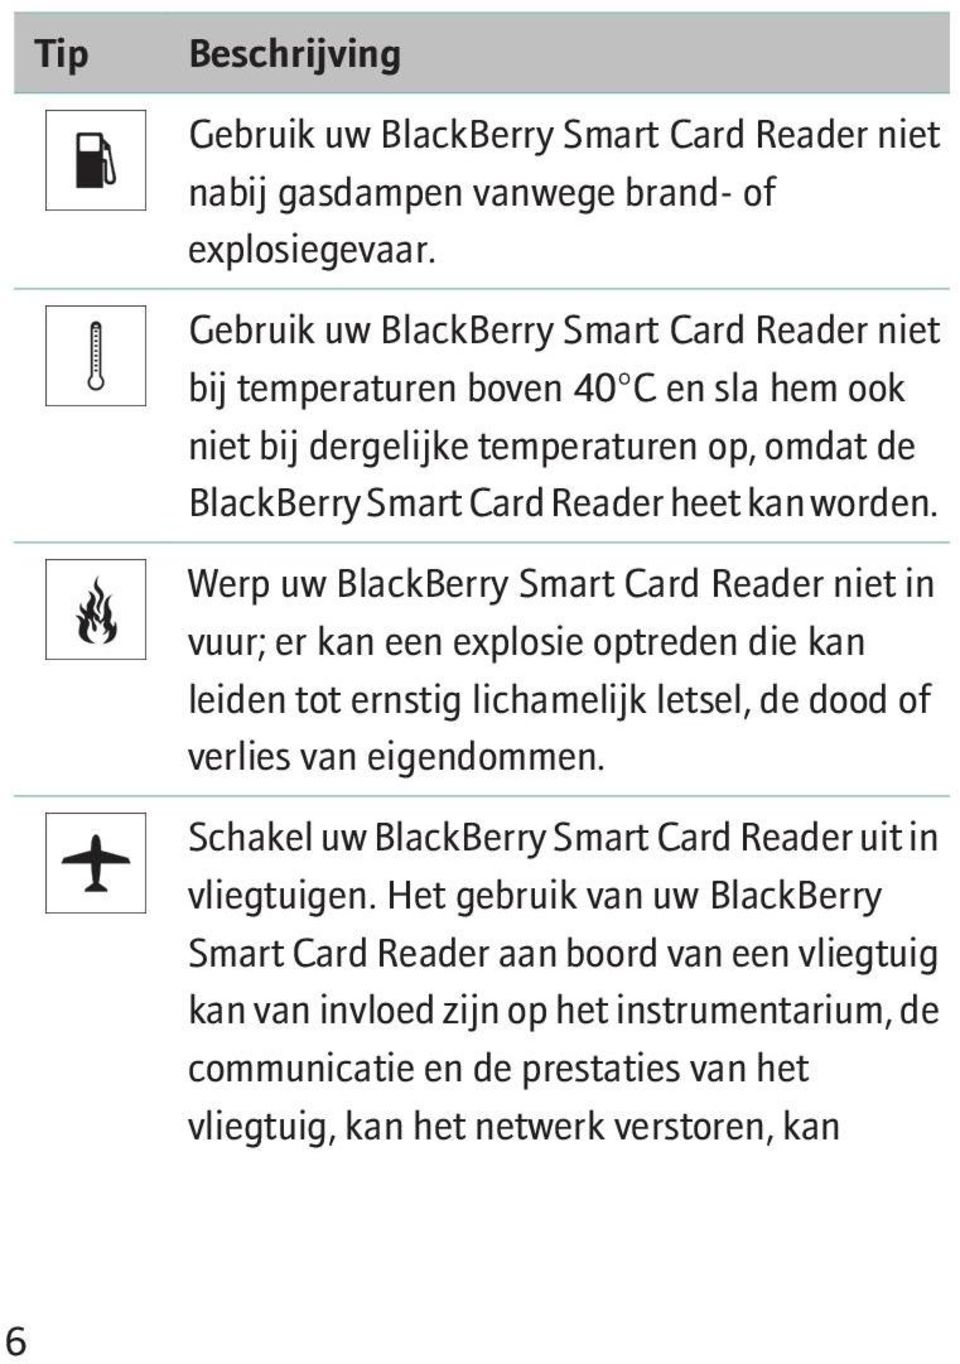 Werp uw BlackBerry Smart Card Reader niet in vuur; er kan een explosie optreden die kan leiden tot ernstig lichamelijk letsel, de dood of verlies van eigendommen.